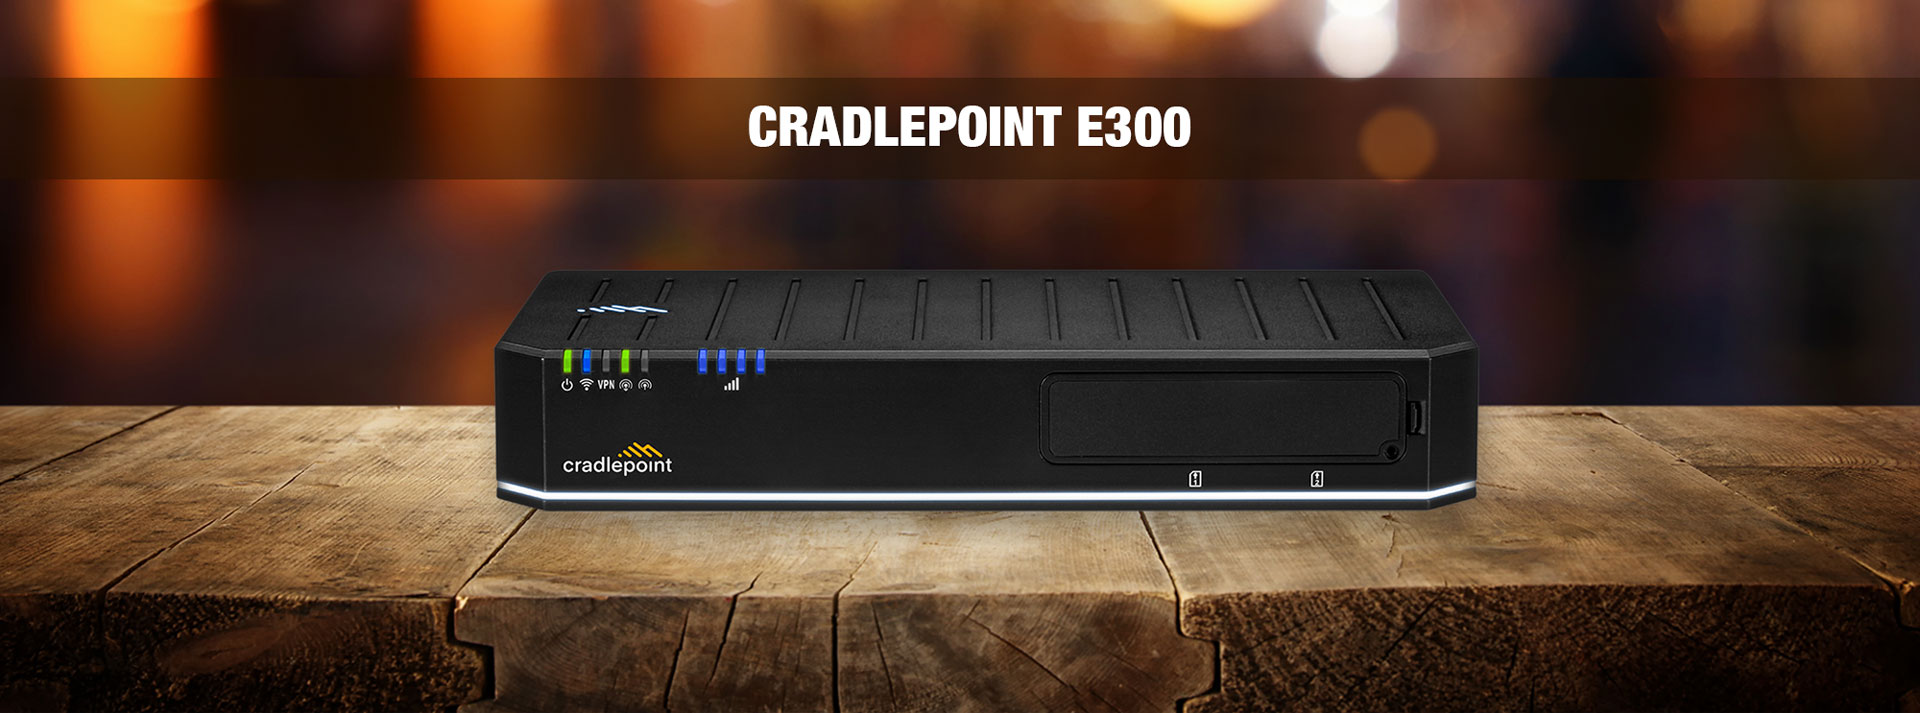 Cradlepoint E300